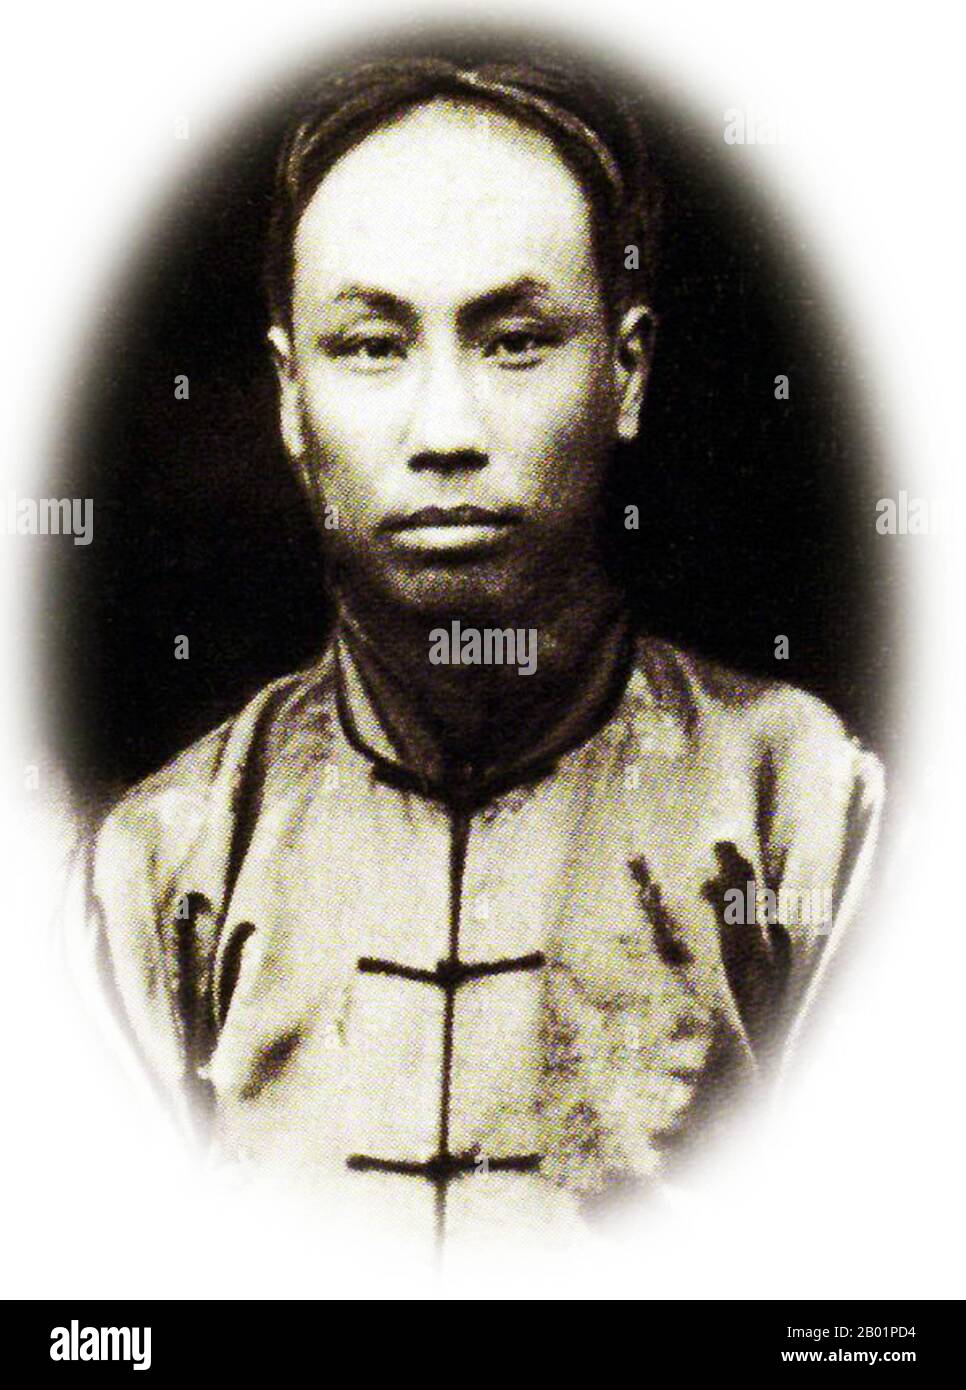 China: Chen Duxiu (8. Oktober 1879 bis 27. Mai 1942), führende Persönlichkeit der Bewegung vom 4. Mai, Mitbegründer der Kommunistischen Partei Chinas, Pädagoge, Philosoph, Politiker, um 1920er Jahre Chen Duxiu spielte viele verschiedene Rollen in der chinesischen Geschichte. Er war eine führende Figur in der antiimperialen Xinhai-Revolution und der Bewegung des Vierten Mai für Wissenschaft und Demokratie. Zusammen mit Li Dazhao war Chen 1921 Mitbegründer der Kommunistischen Partei Chinas. Er war sein erster Generalsekretär. Chen war Pädagoge, Philosoph und Politiker. Sein Stammhaus war in Anqing, Anhui. Stockfoto